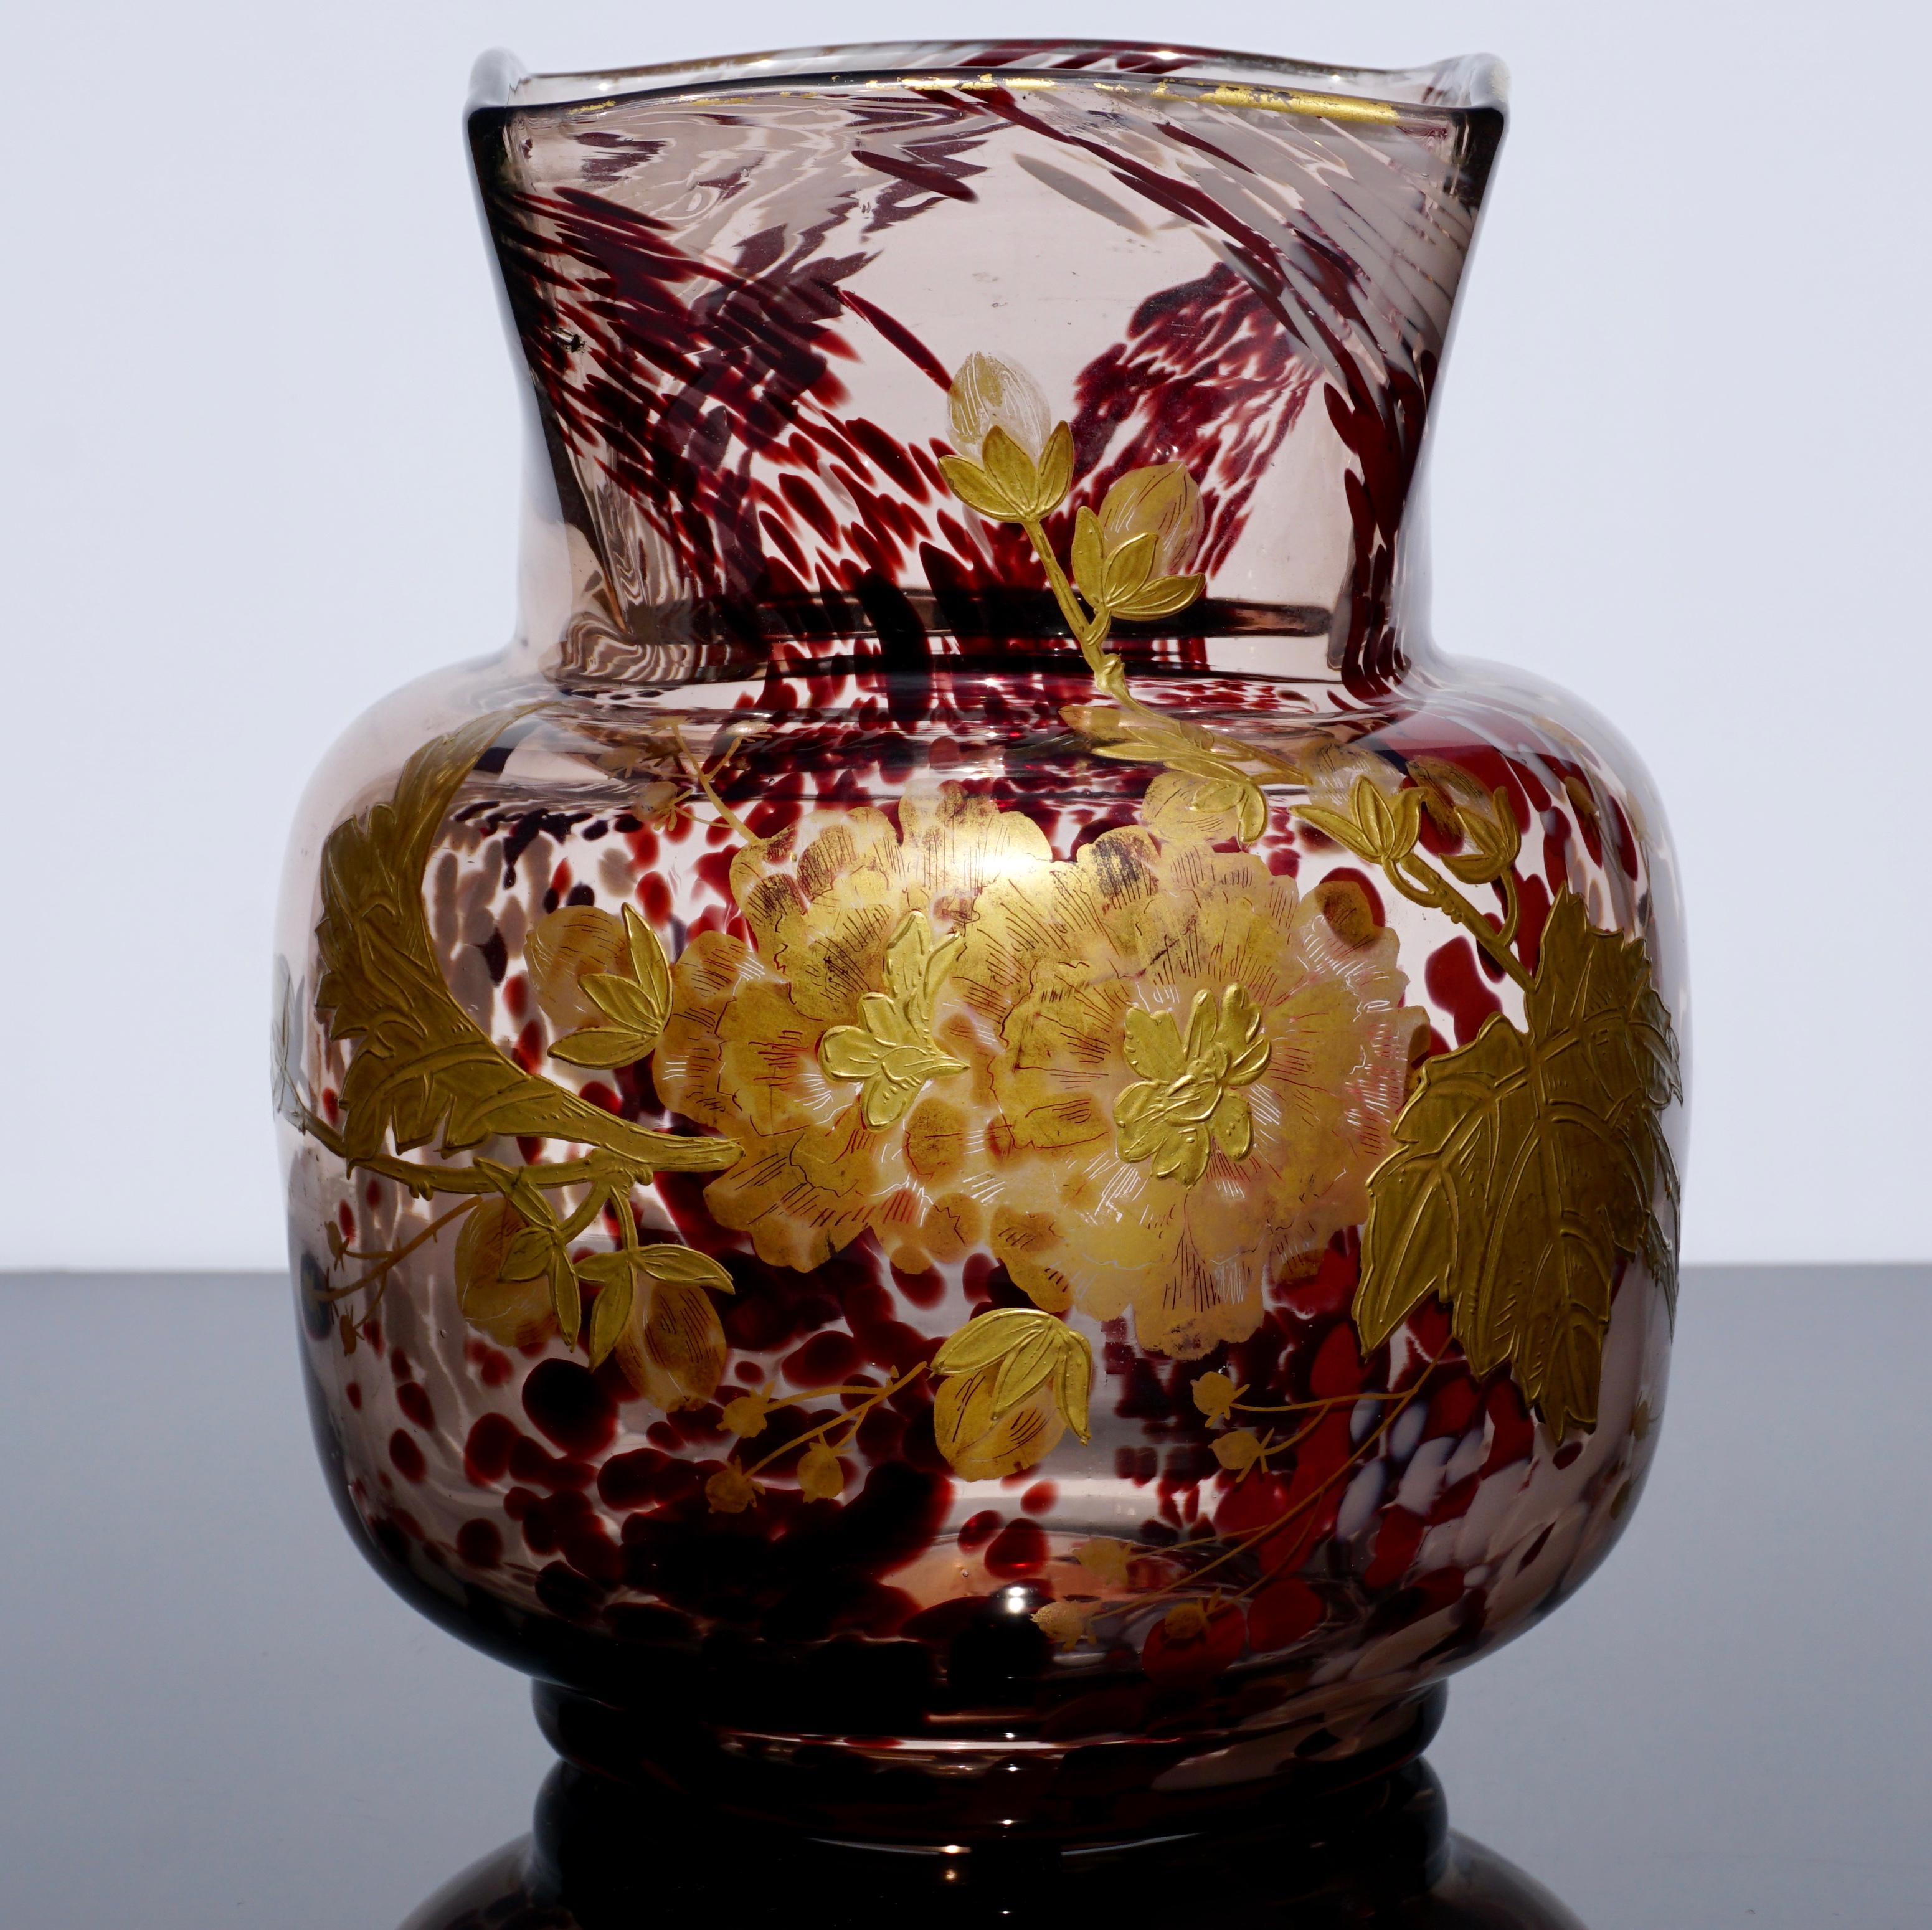 Questi vasi sono gemme nascoste nel mondo del vetro artistico perché non sono mai firmati. Realizzato da Earnst Leveille in collaborazione con Eugene Rouseau a Parigi, intorno al 1900, questo vaso in vetro soffiato con inclusioni screziate di bianco